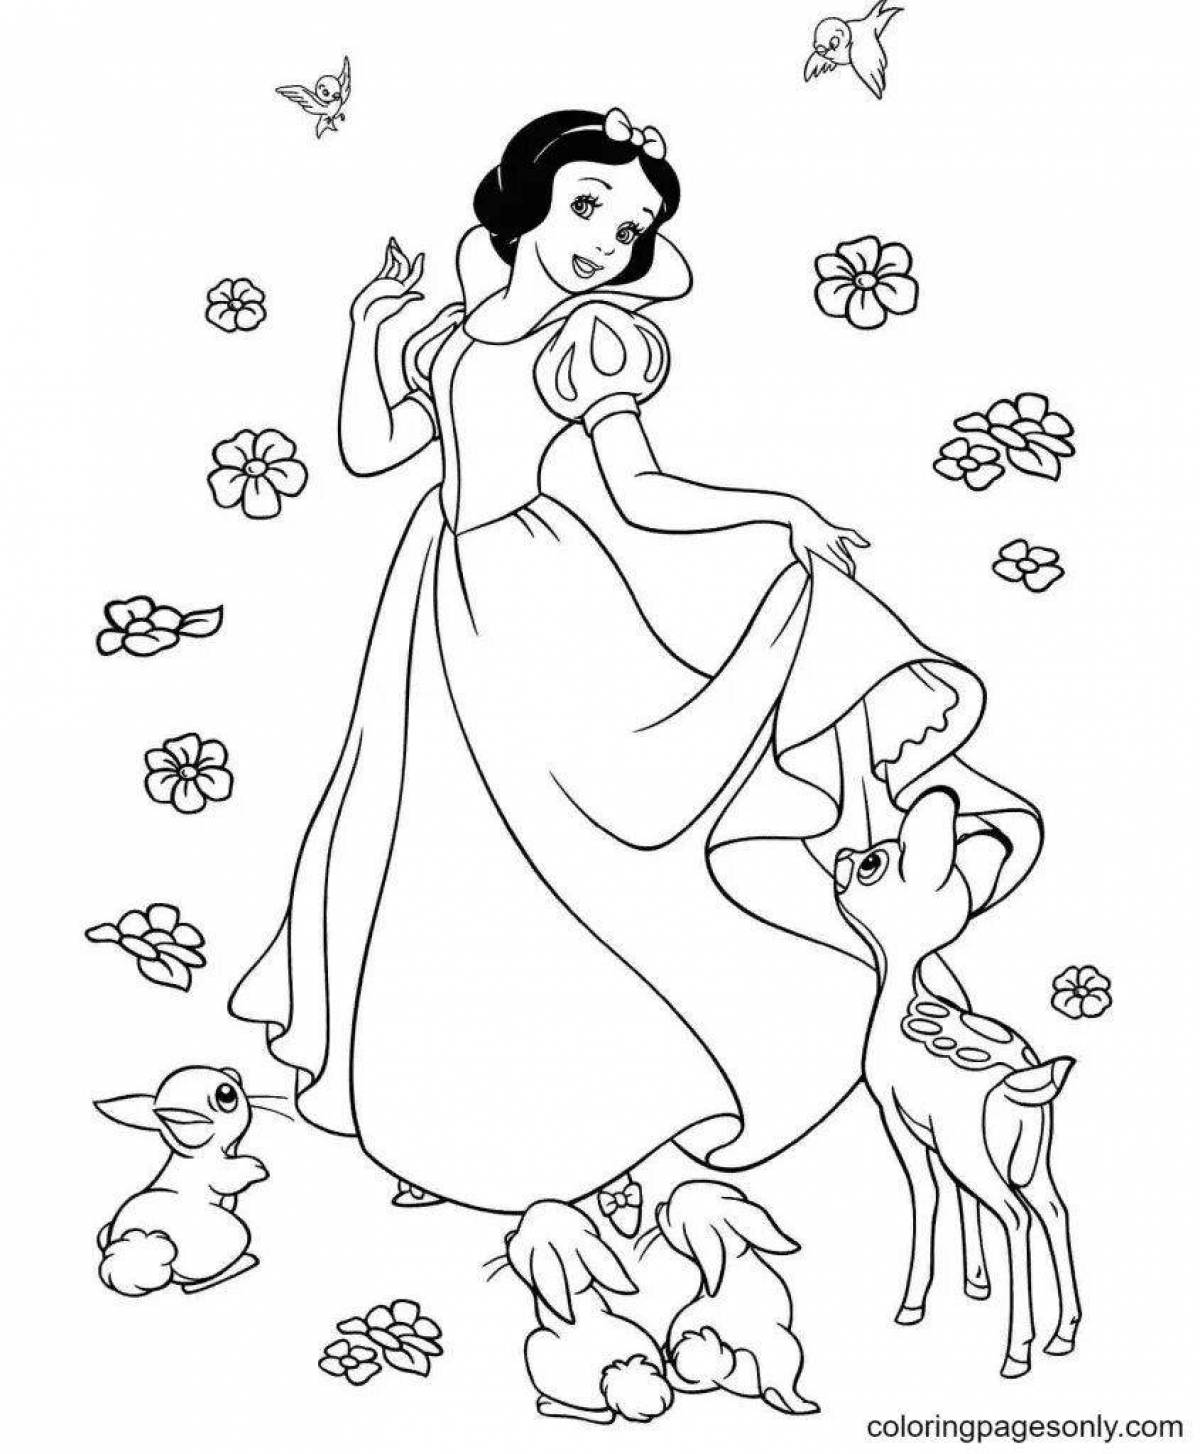 Восхитительная раскраска для детей с принцессами диснея